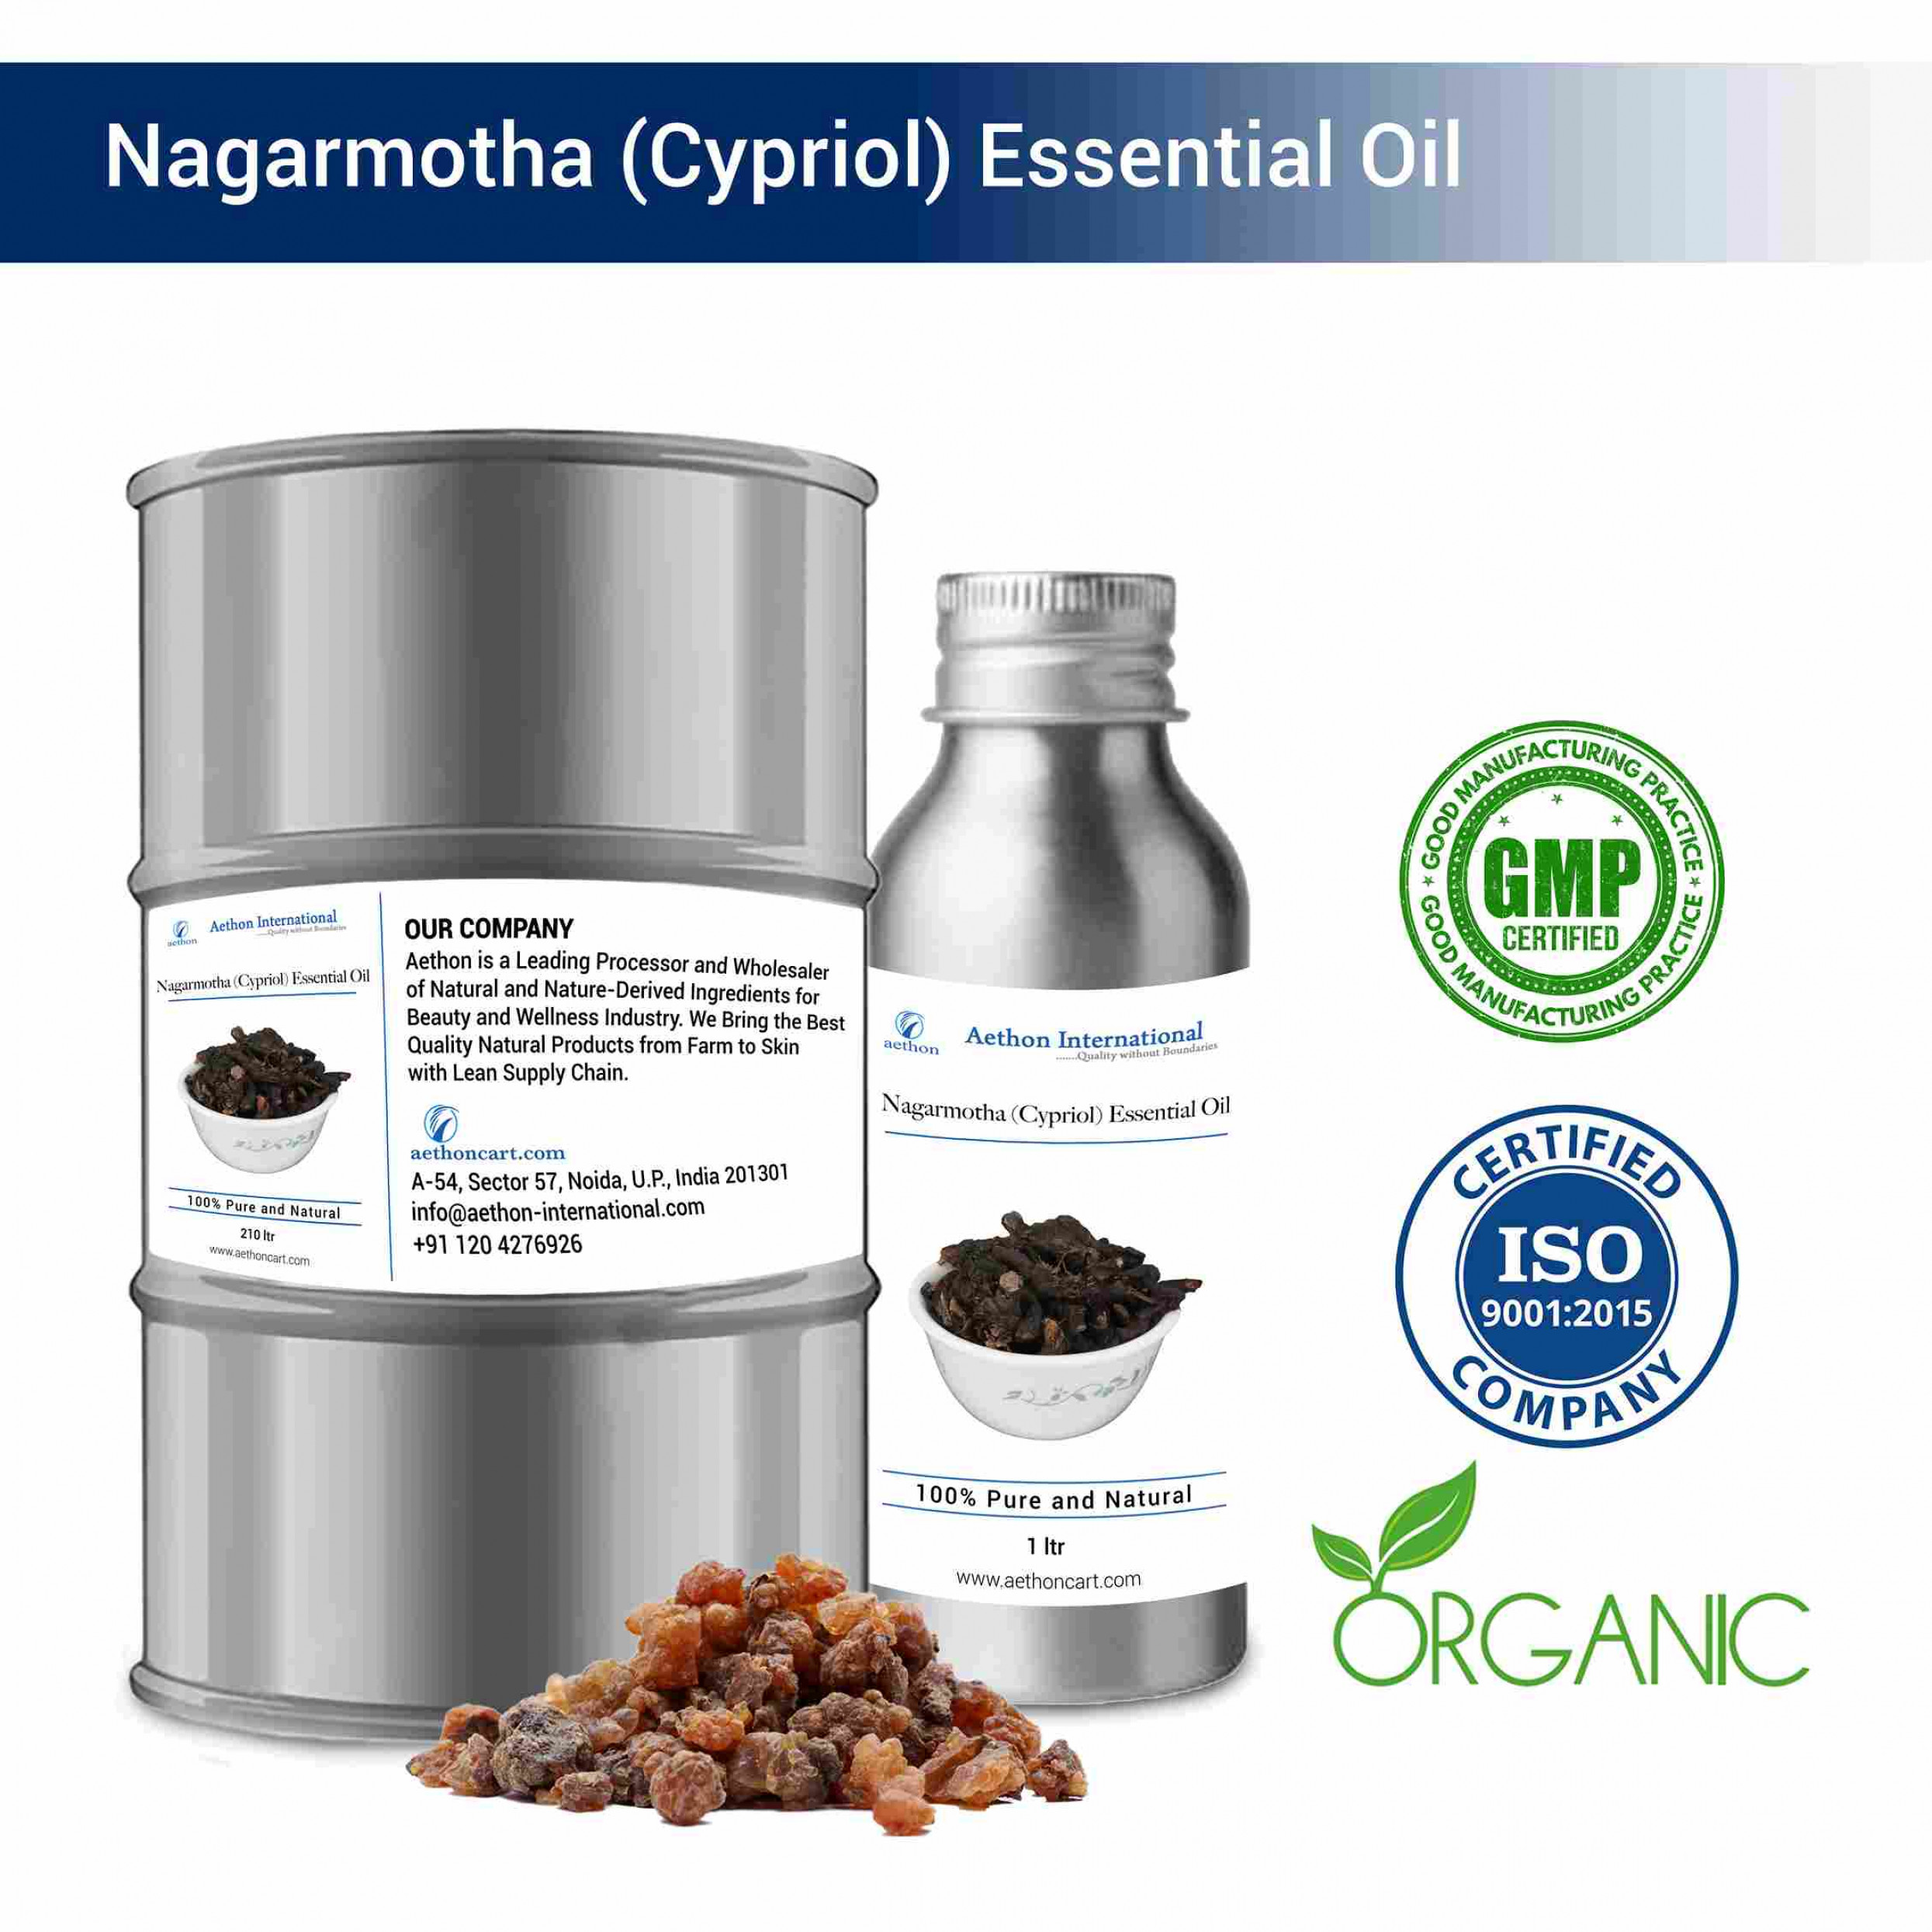 Nagarmotha (Cypriol) Essential Oil